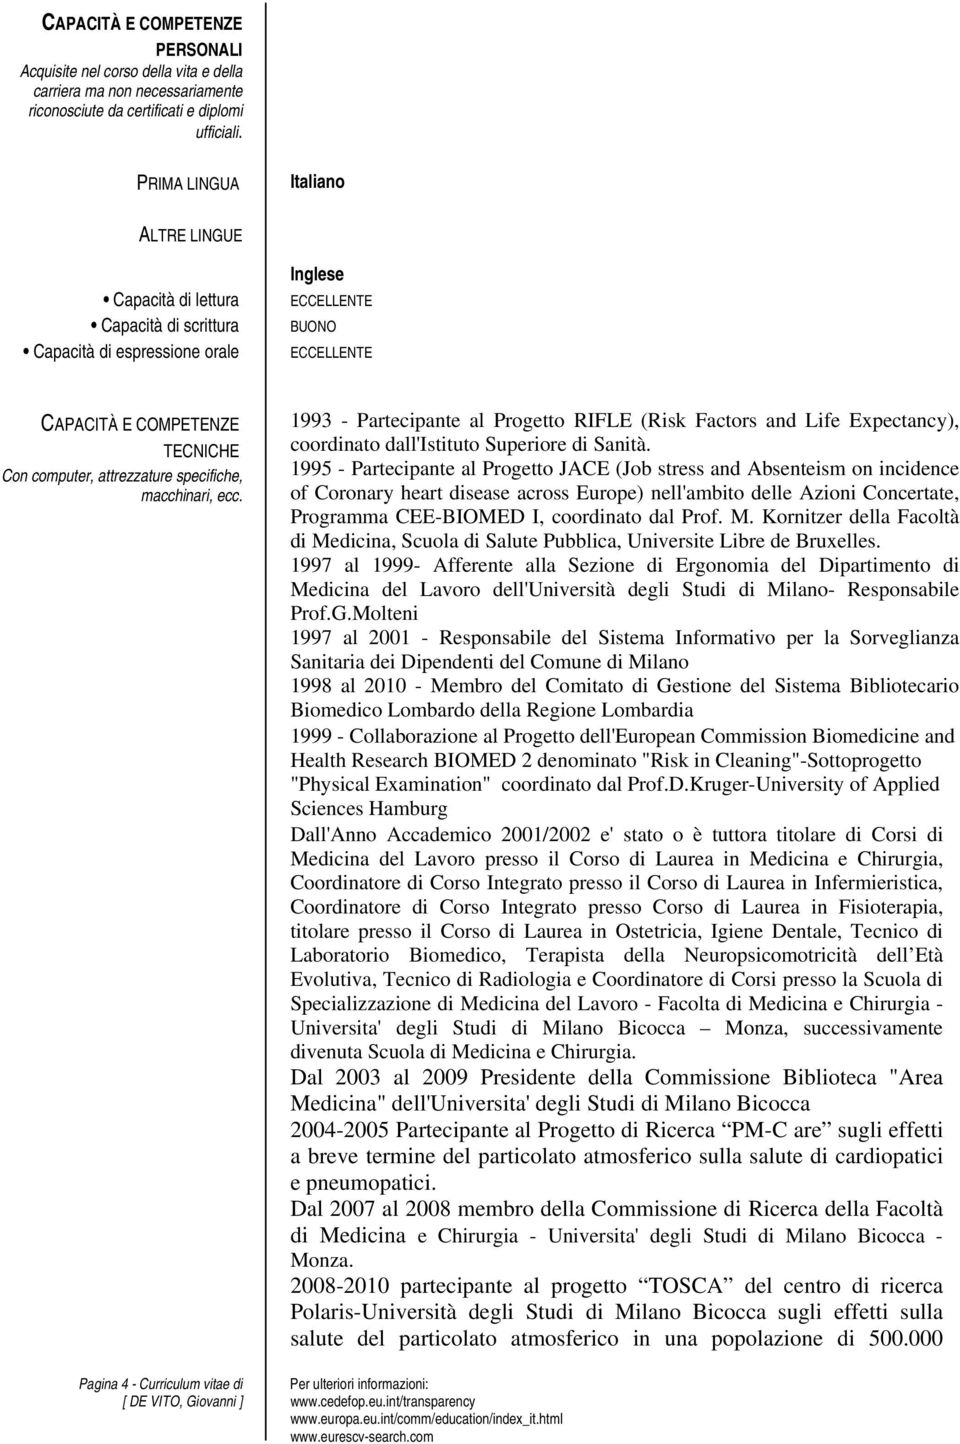 attrezzature specifiche, macchinari, ecc. Pagina 4 - Curriculum vitae di 1993 - Partecipante al Progetto RIFLE (Risk Factors and Life Expectancy), coordinato dall'istituto Superiore di Sanità.